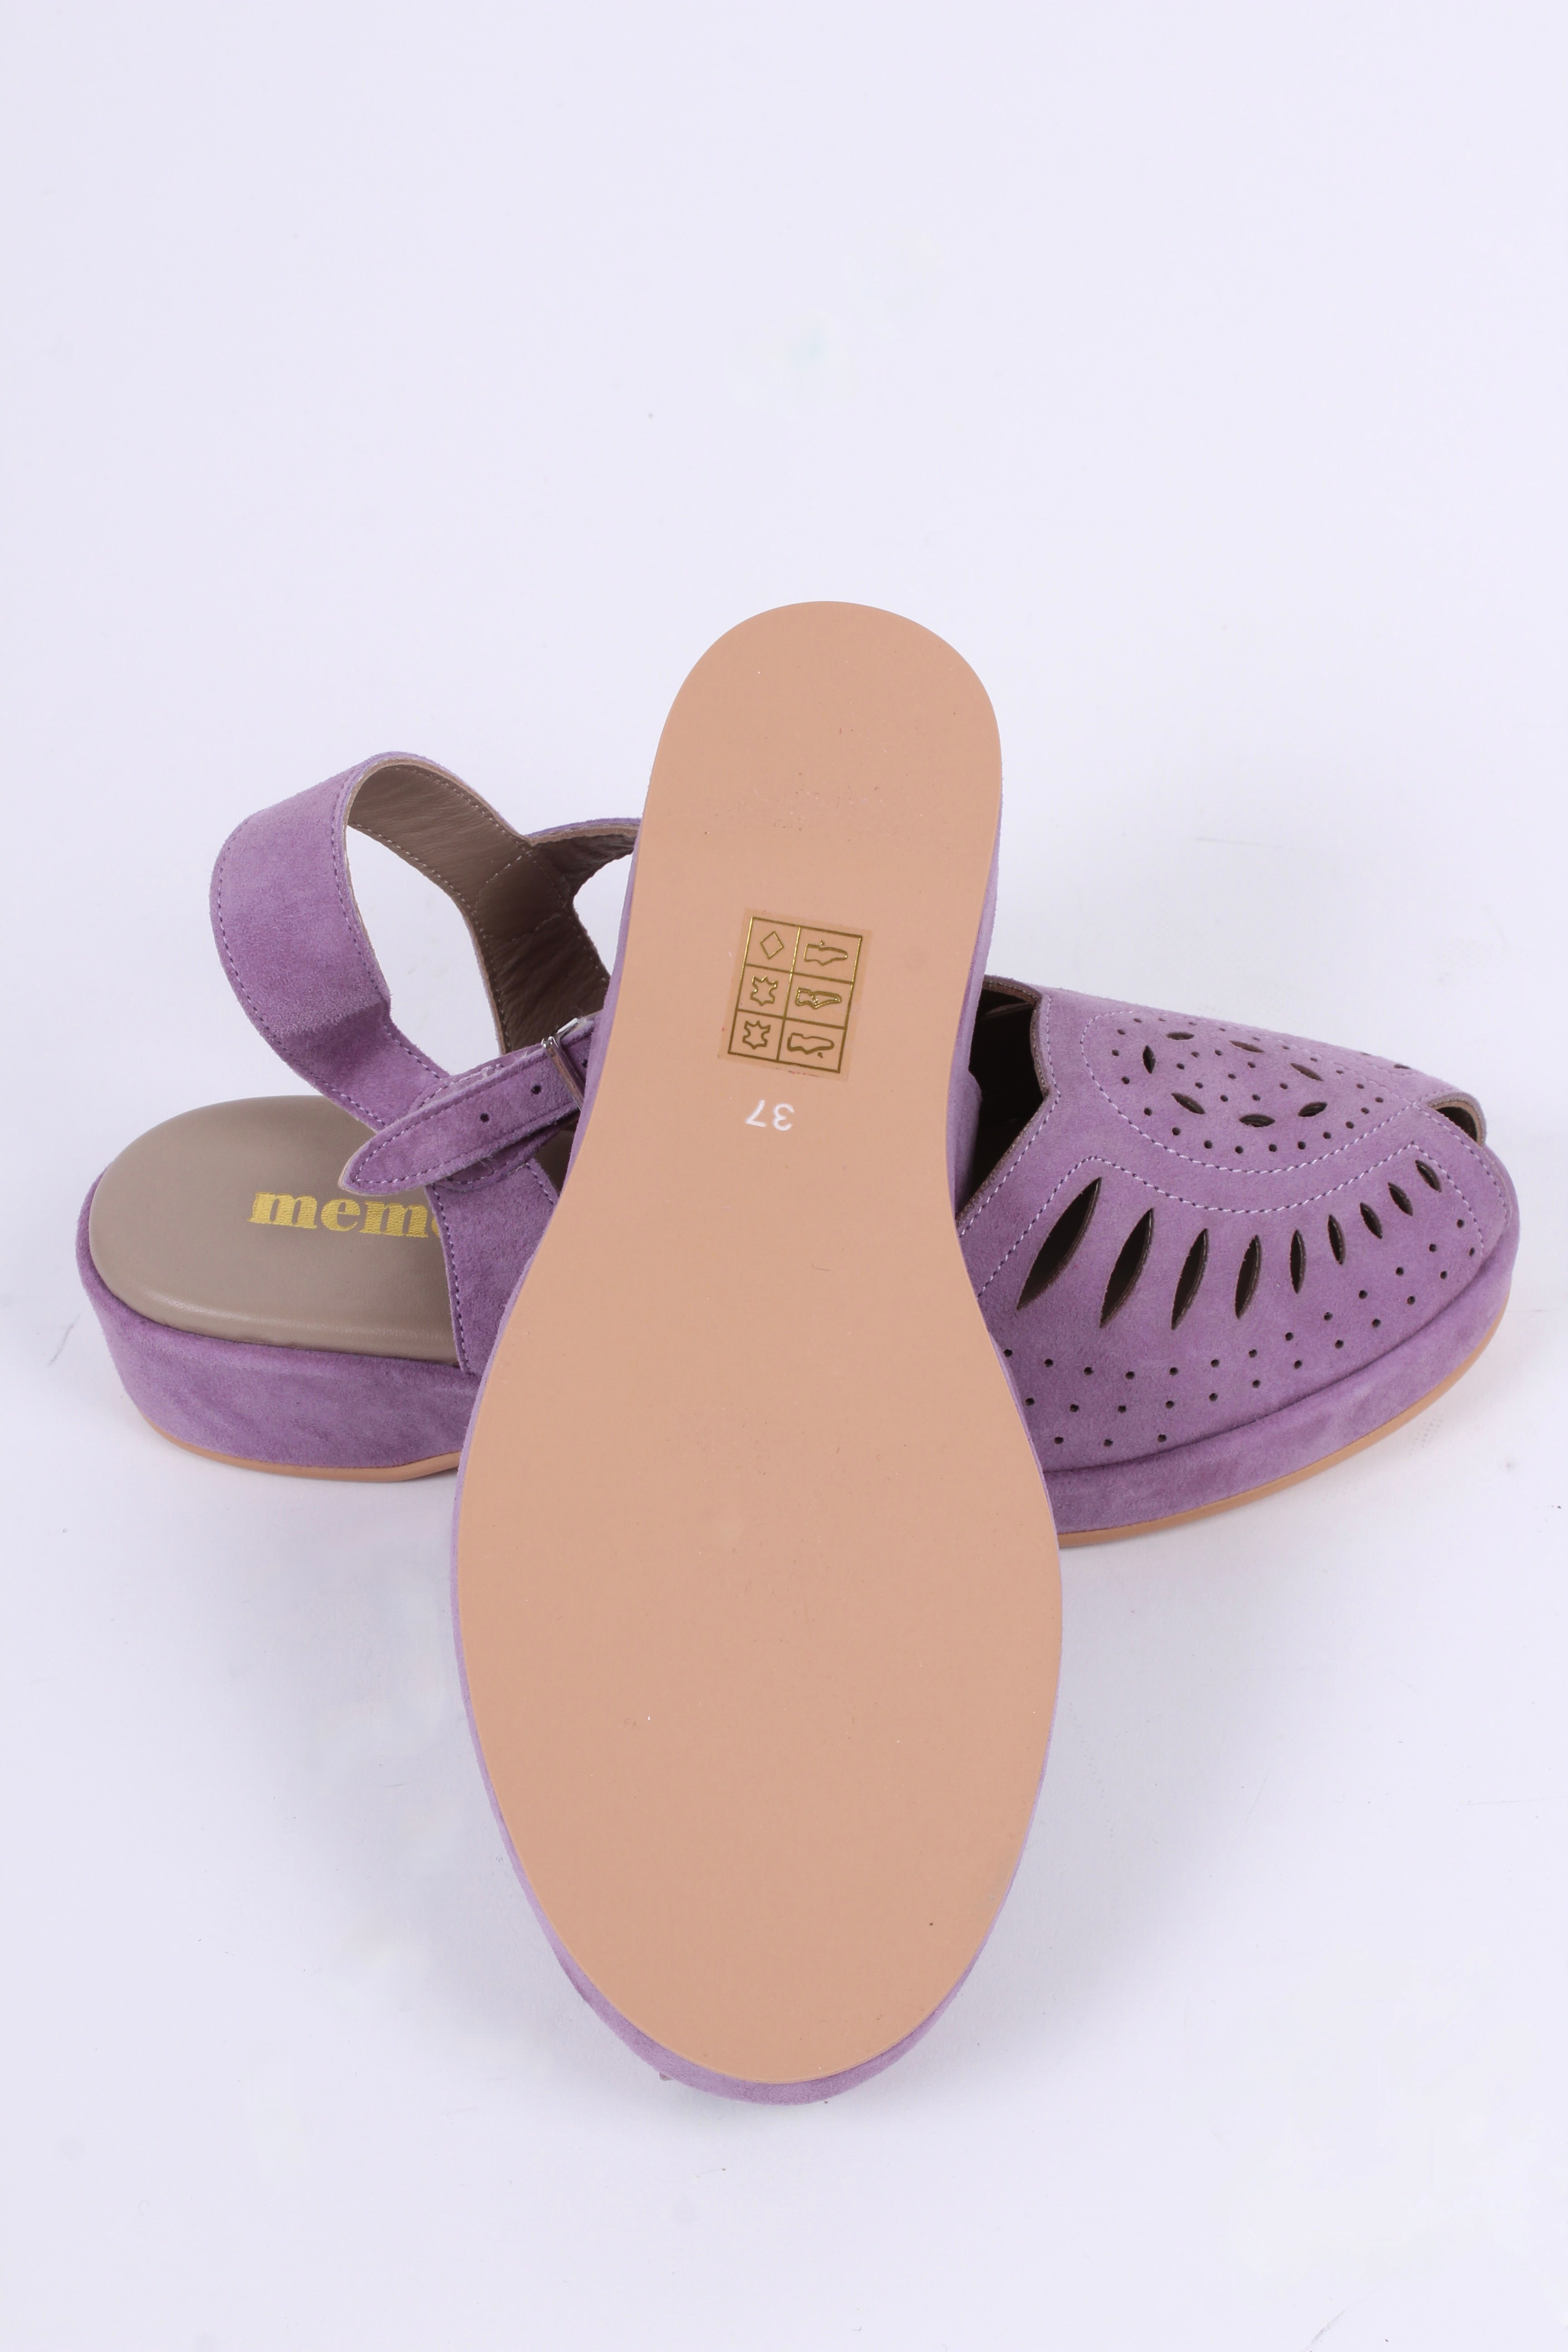 Bløde 1940'er / 1950'er inspirerede sandaler - Lavendel - Ella